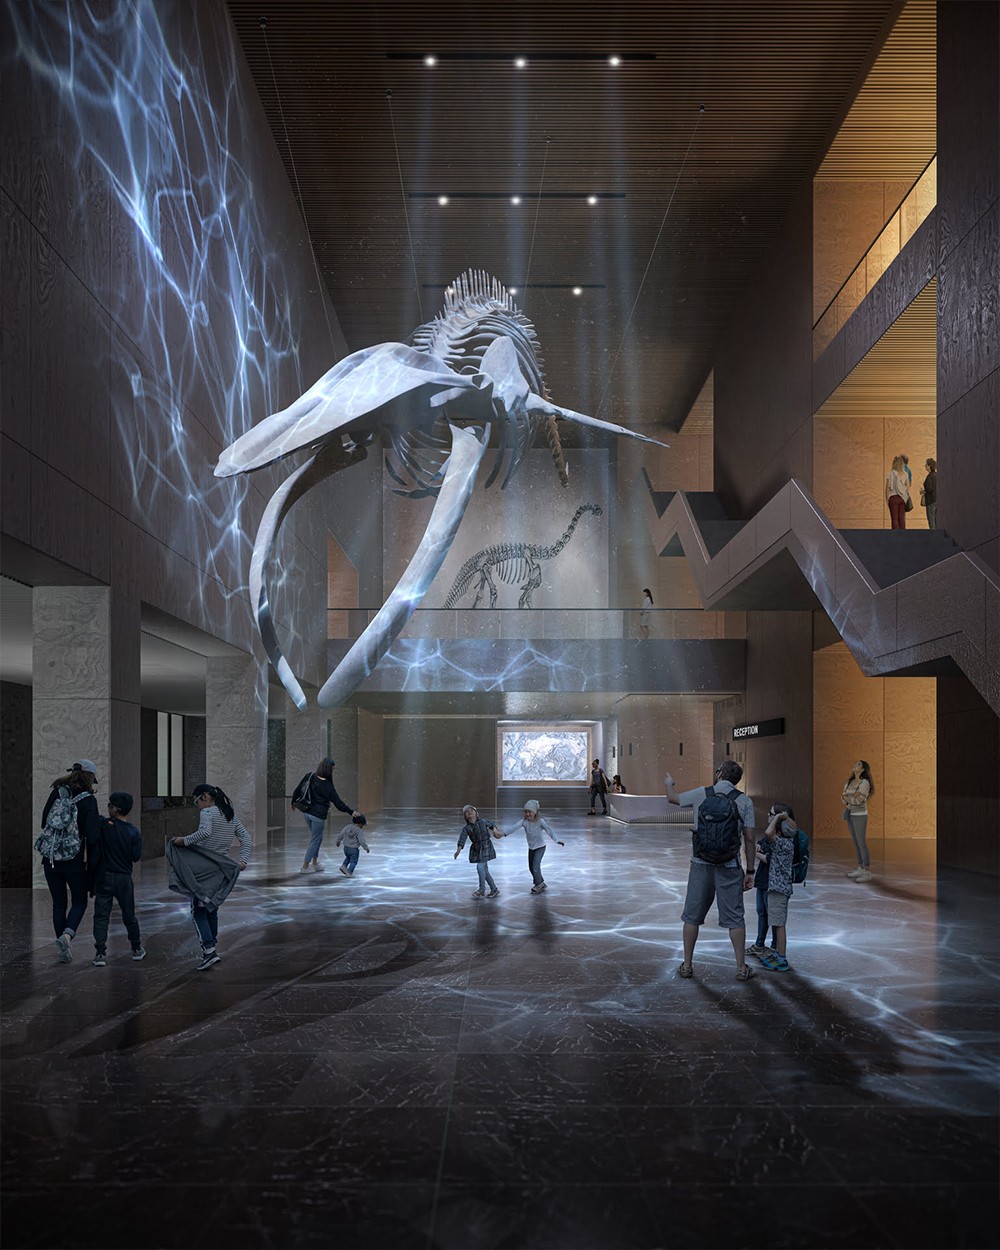 Innenraumvisualisierung eines Museums mit dem Skelett von einem Wal